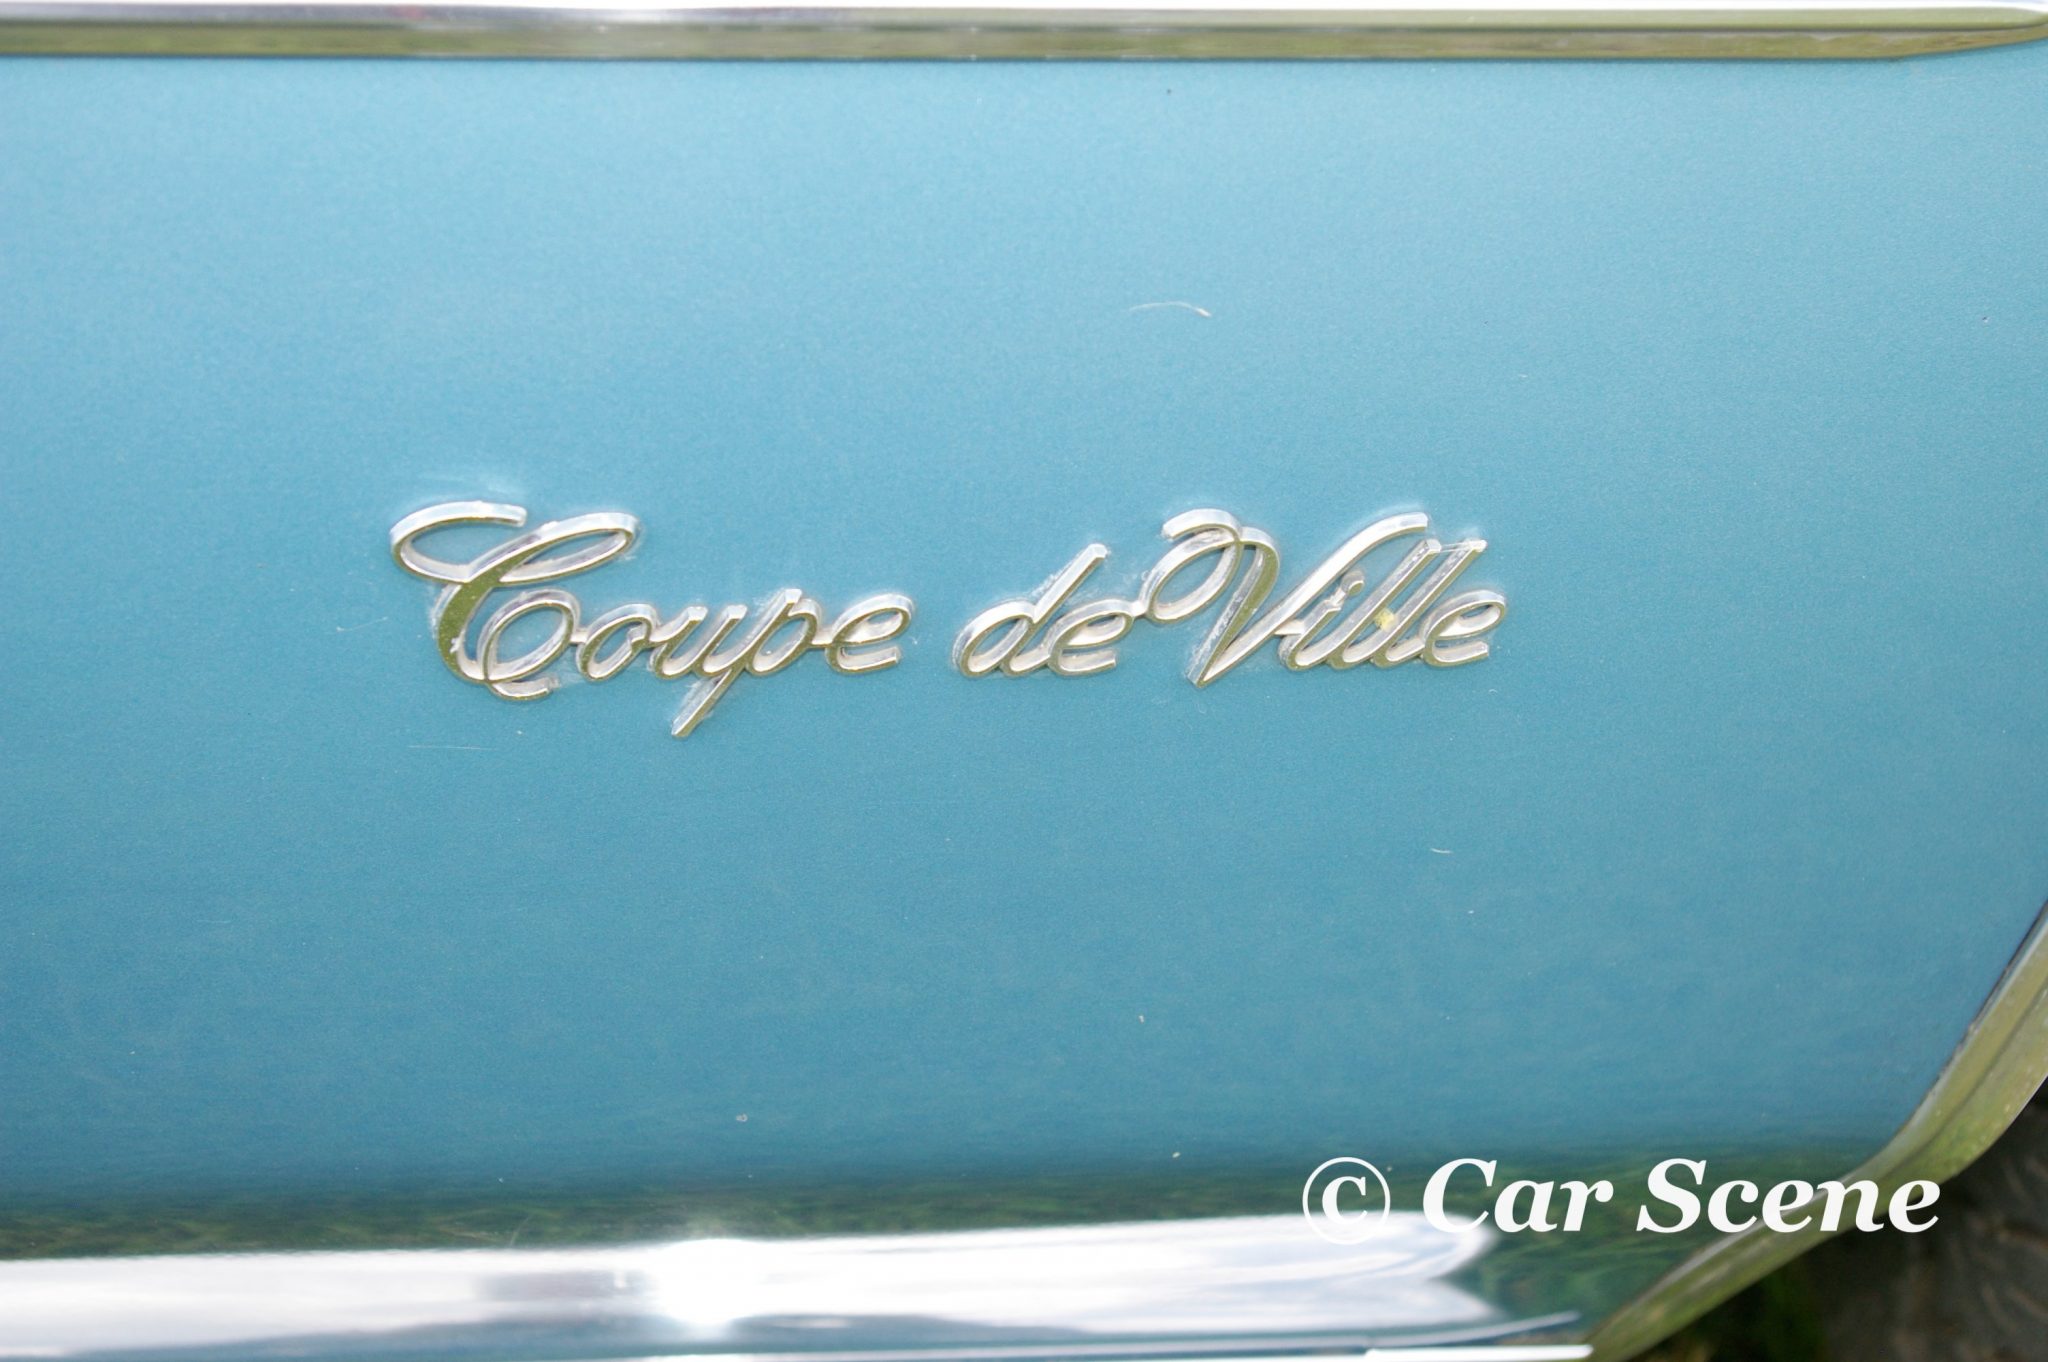 1971 Cadillac Coupe De Ville Badge front fender badge